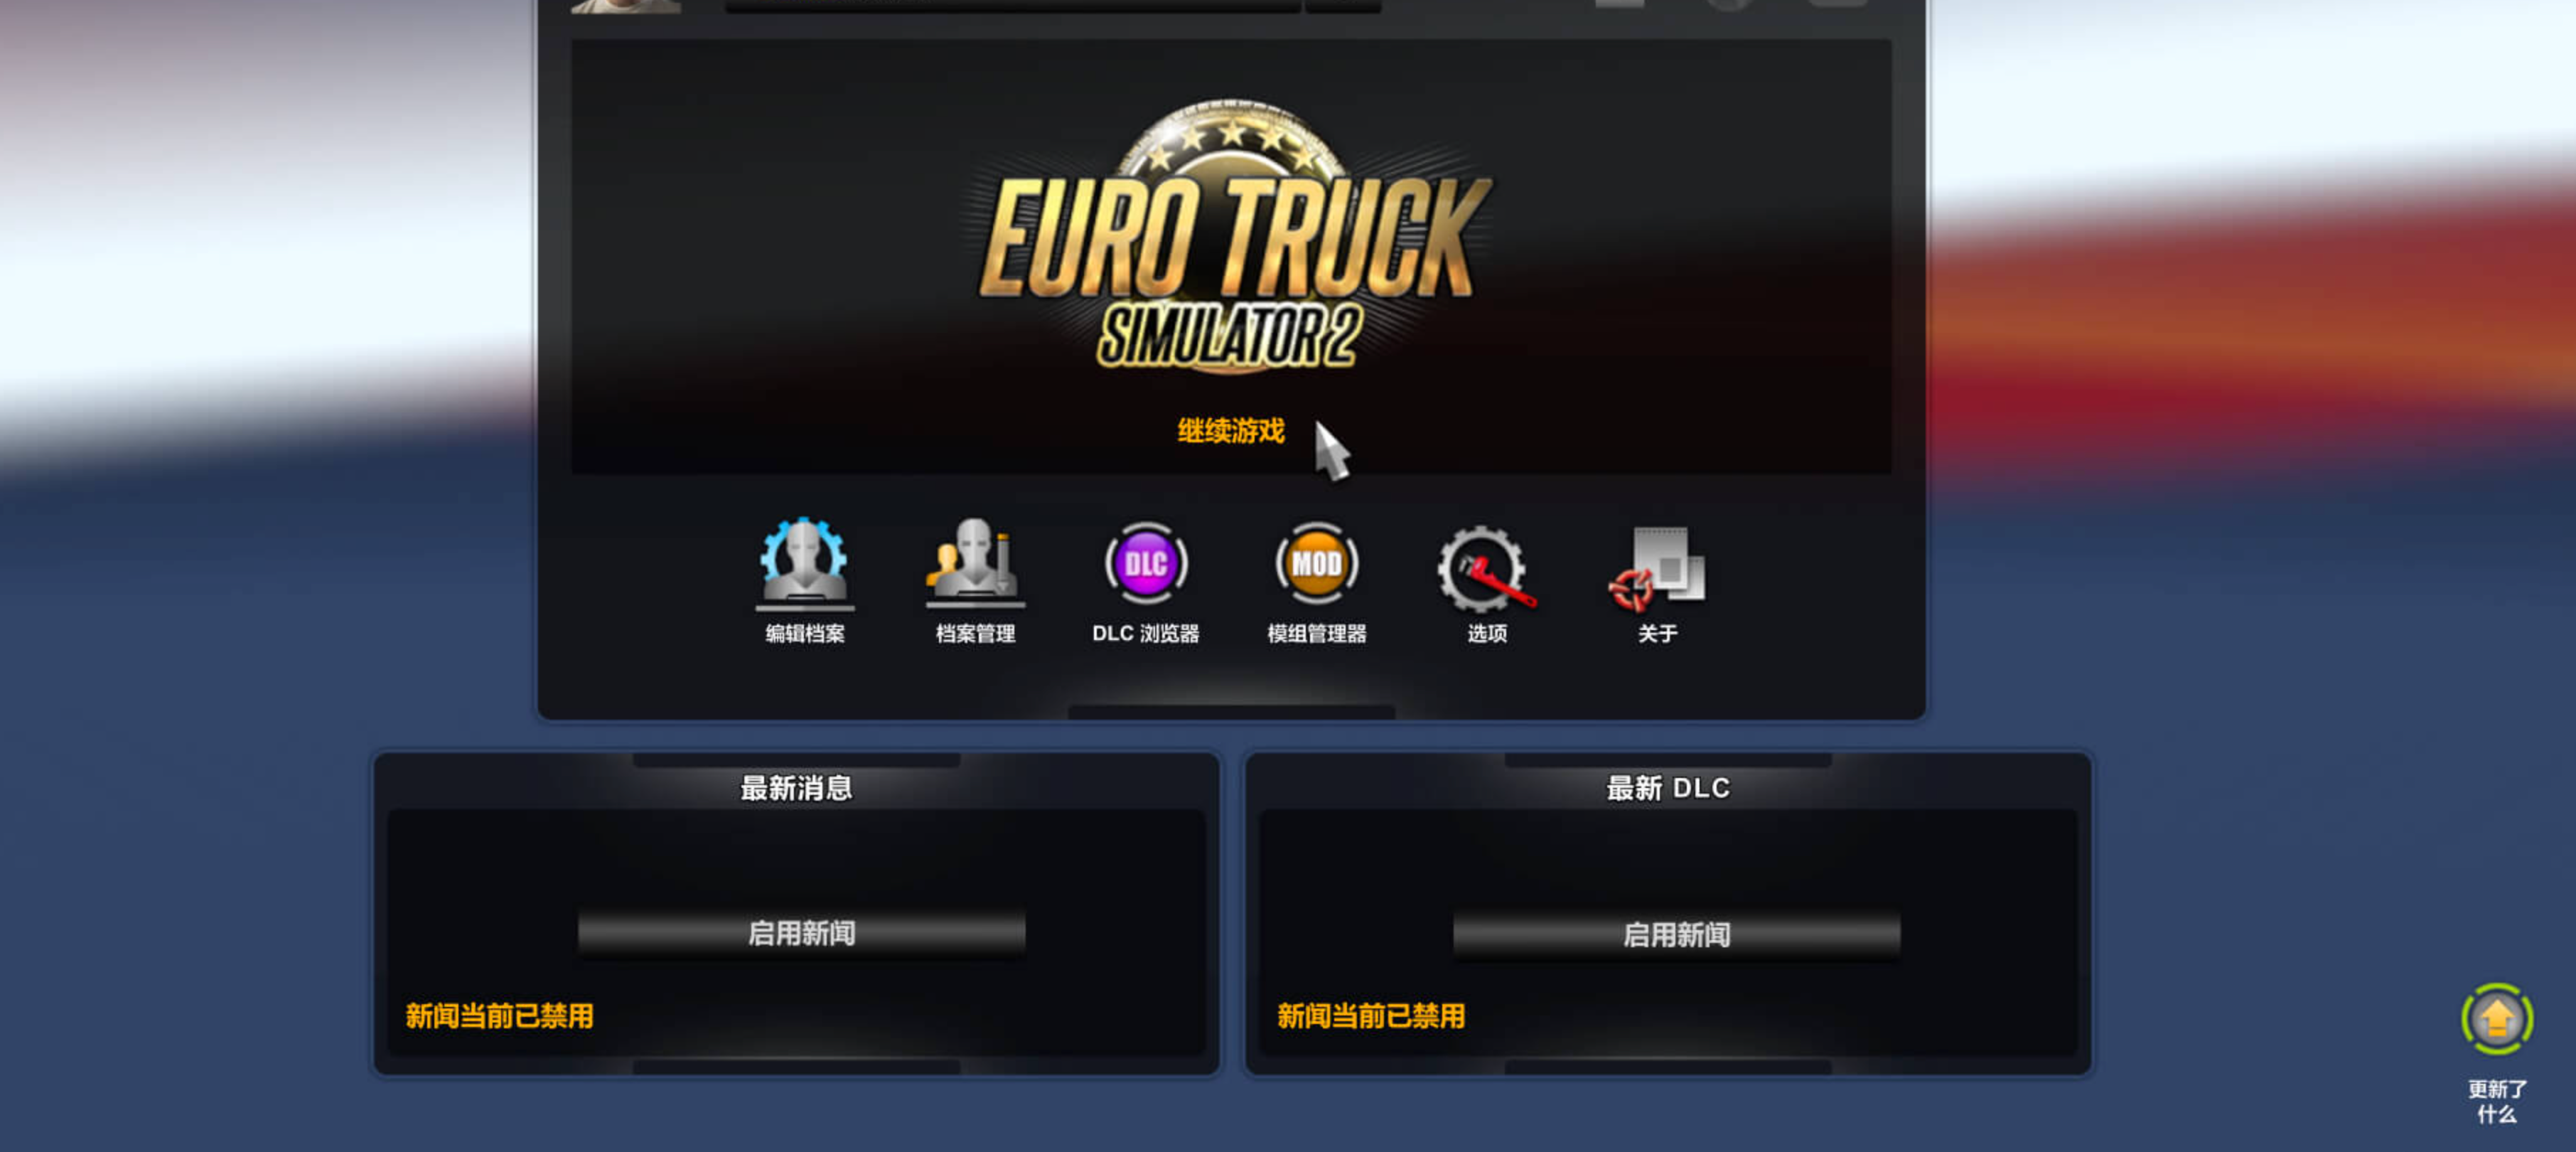 欧洲卡车模拟2 Euro Truck Simulator 2 for Mac v1.49.2.23s 中文原生版 含全部DLC-2